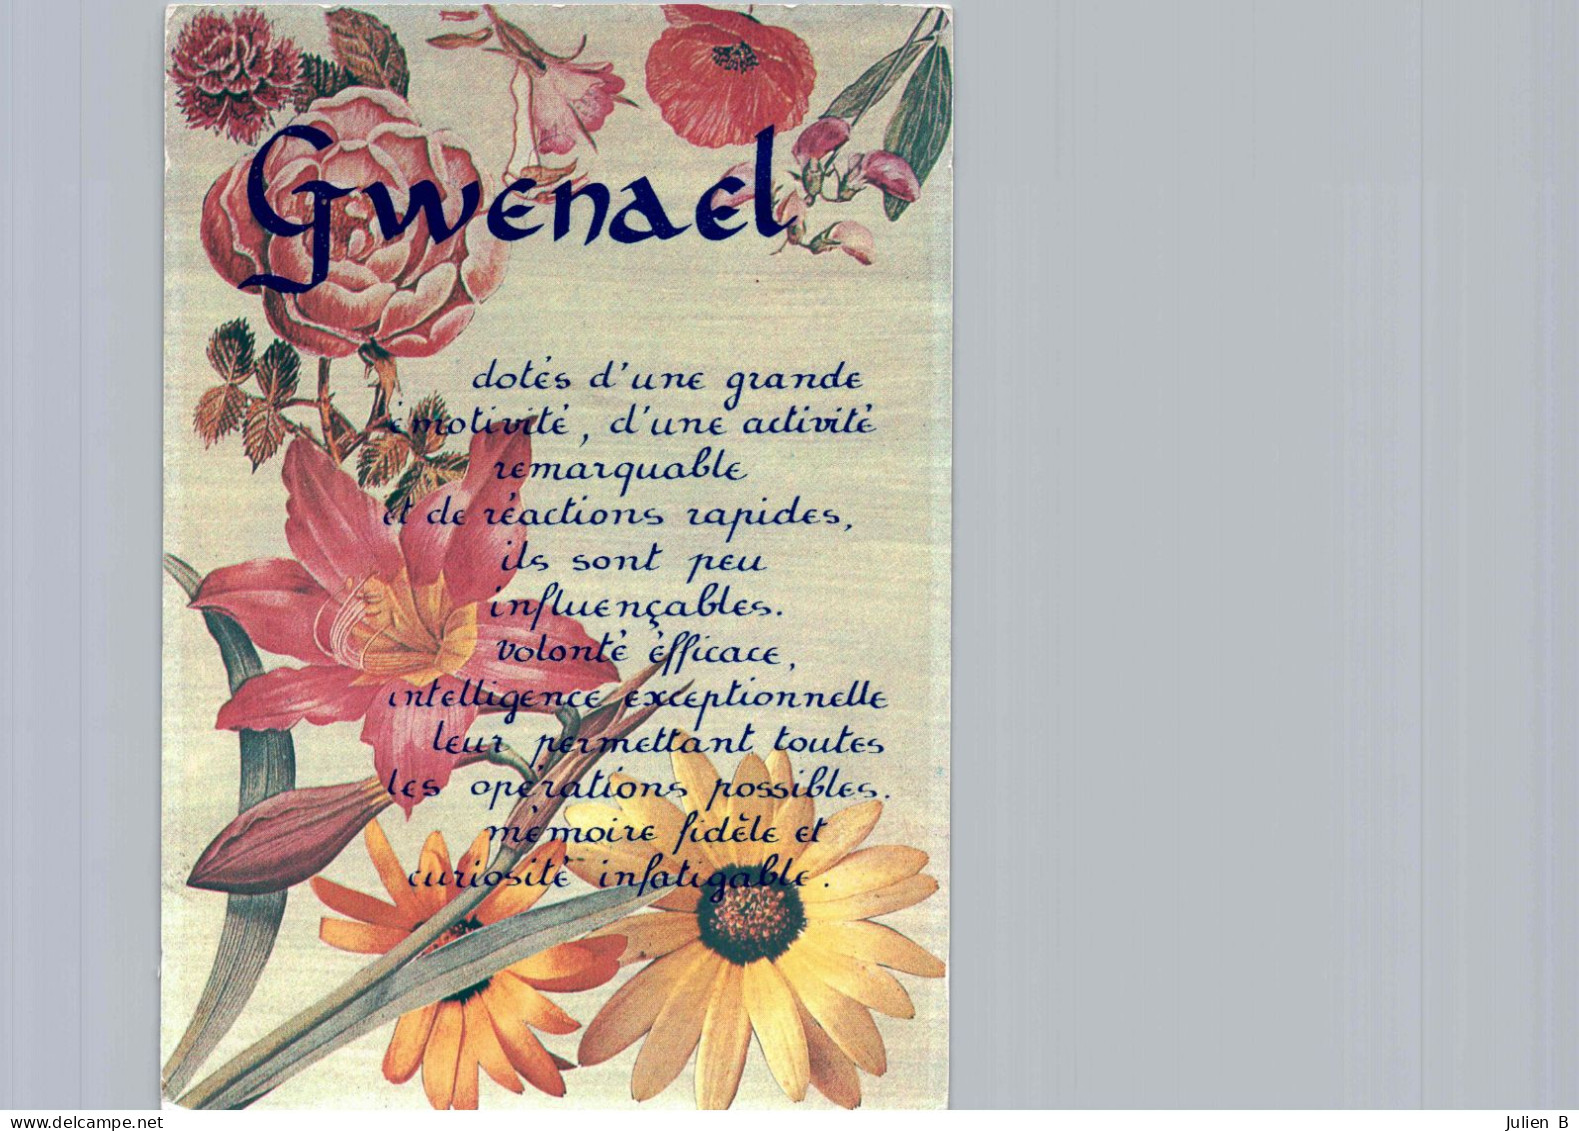 Gwenael, Edition ICDF - Voornamen